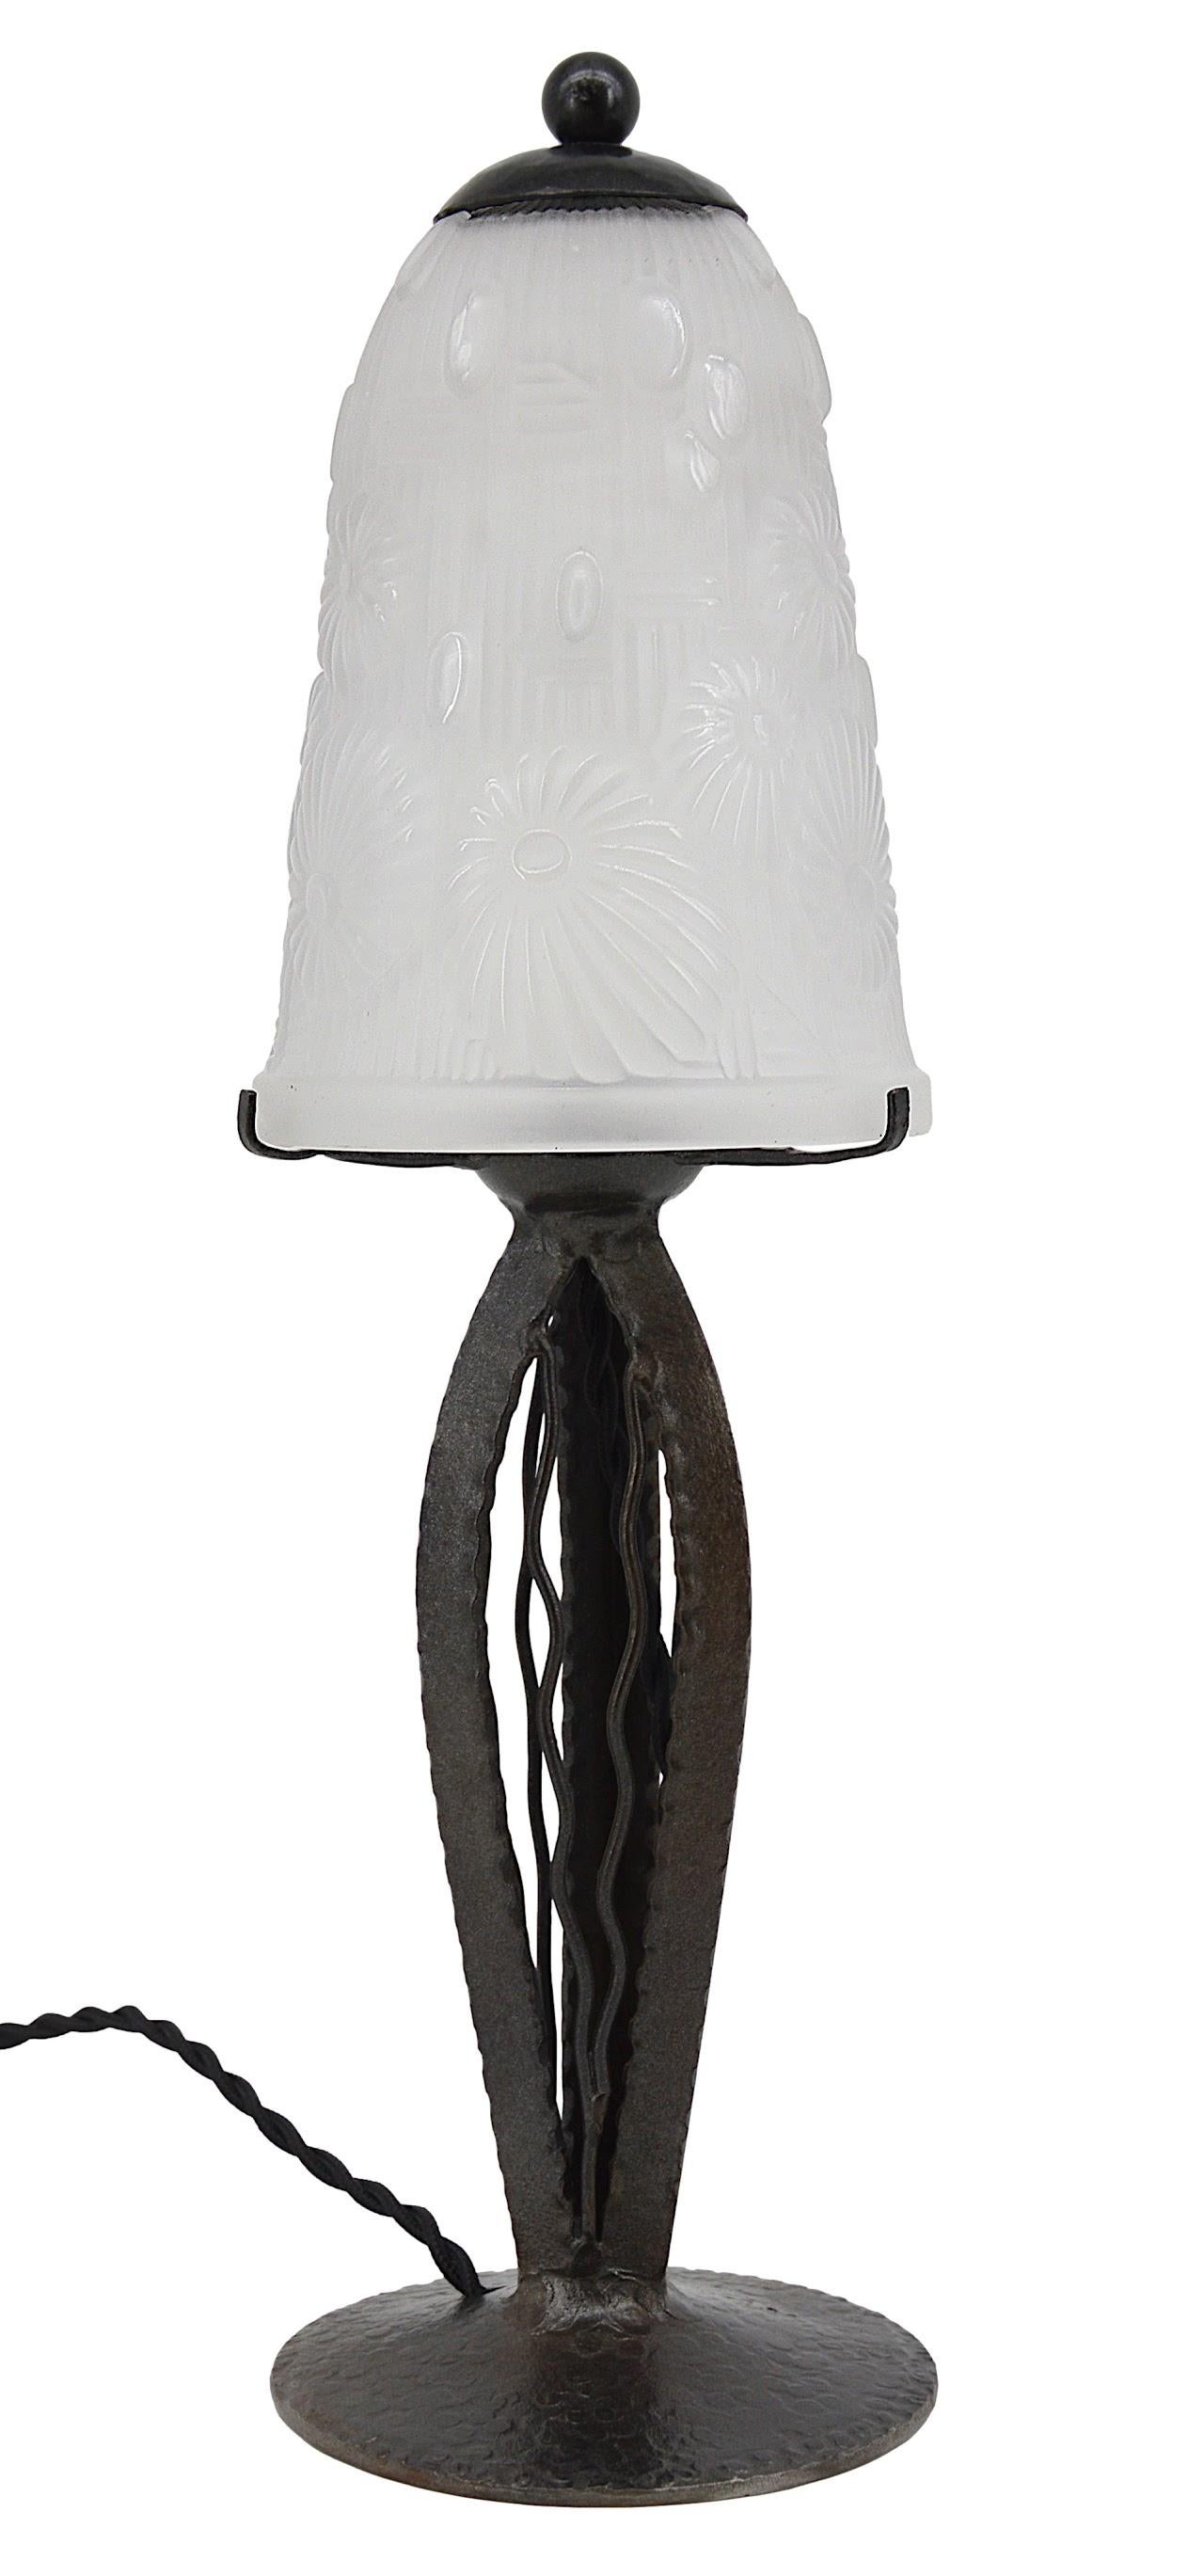 Lampe de table Art déco française par Daum (Croismare, Nancy), France, vers 1930. Abat-jour en verre givré blanc avec un motif floral stylisé. Base en fer forgé. Hauteur : 14